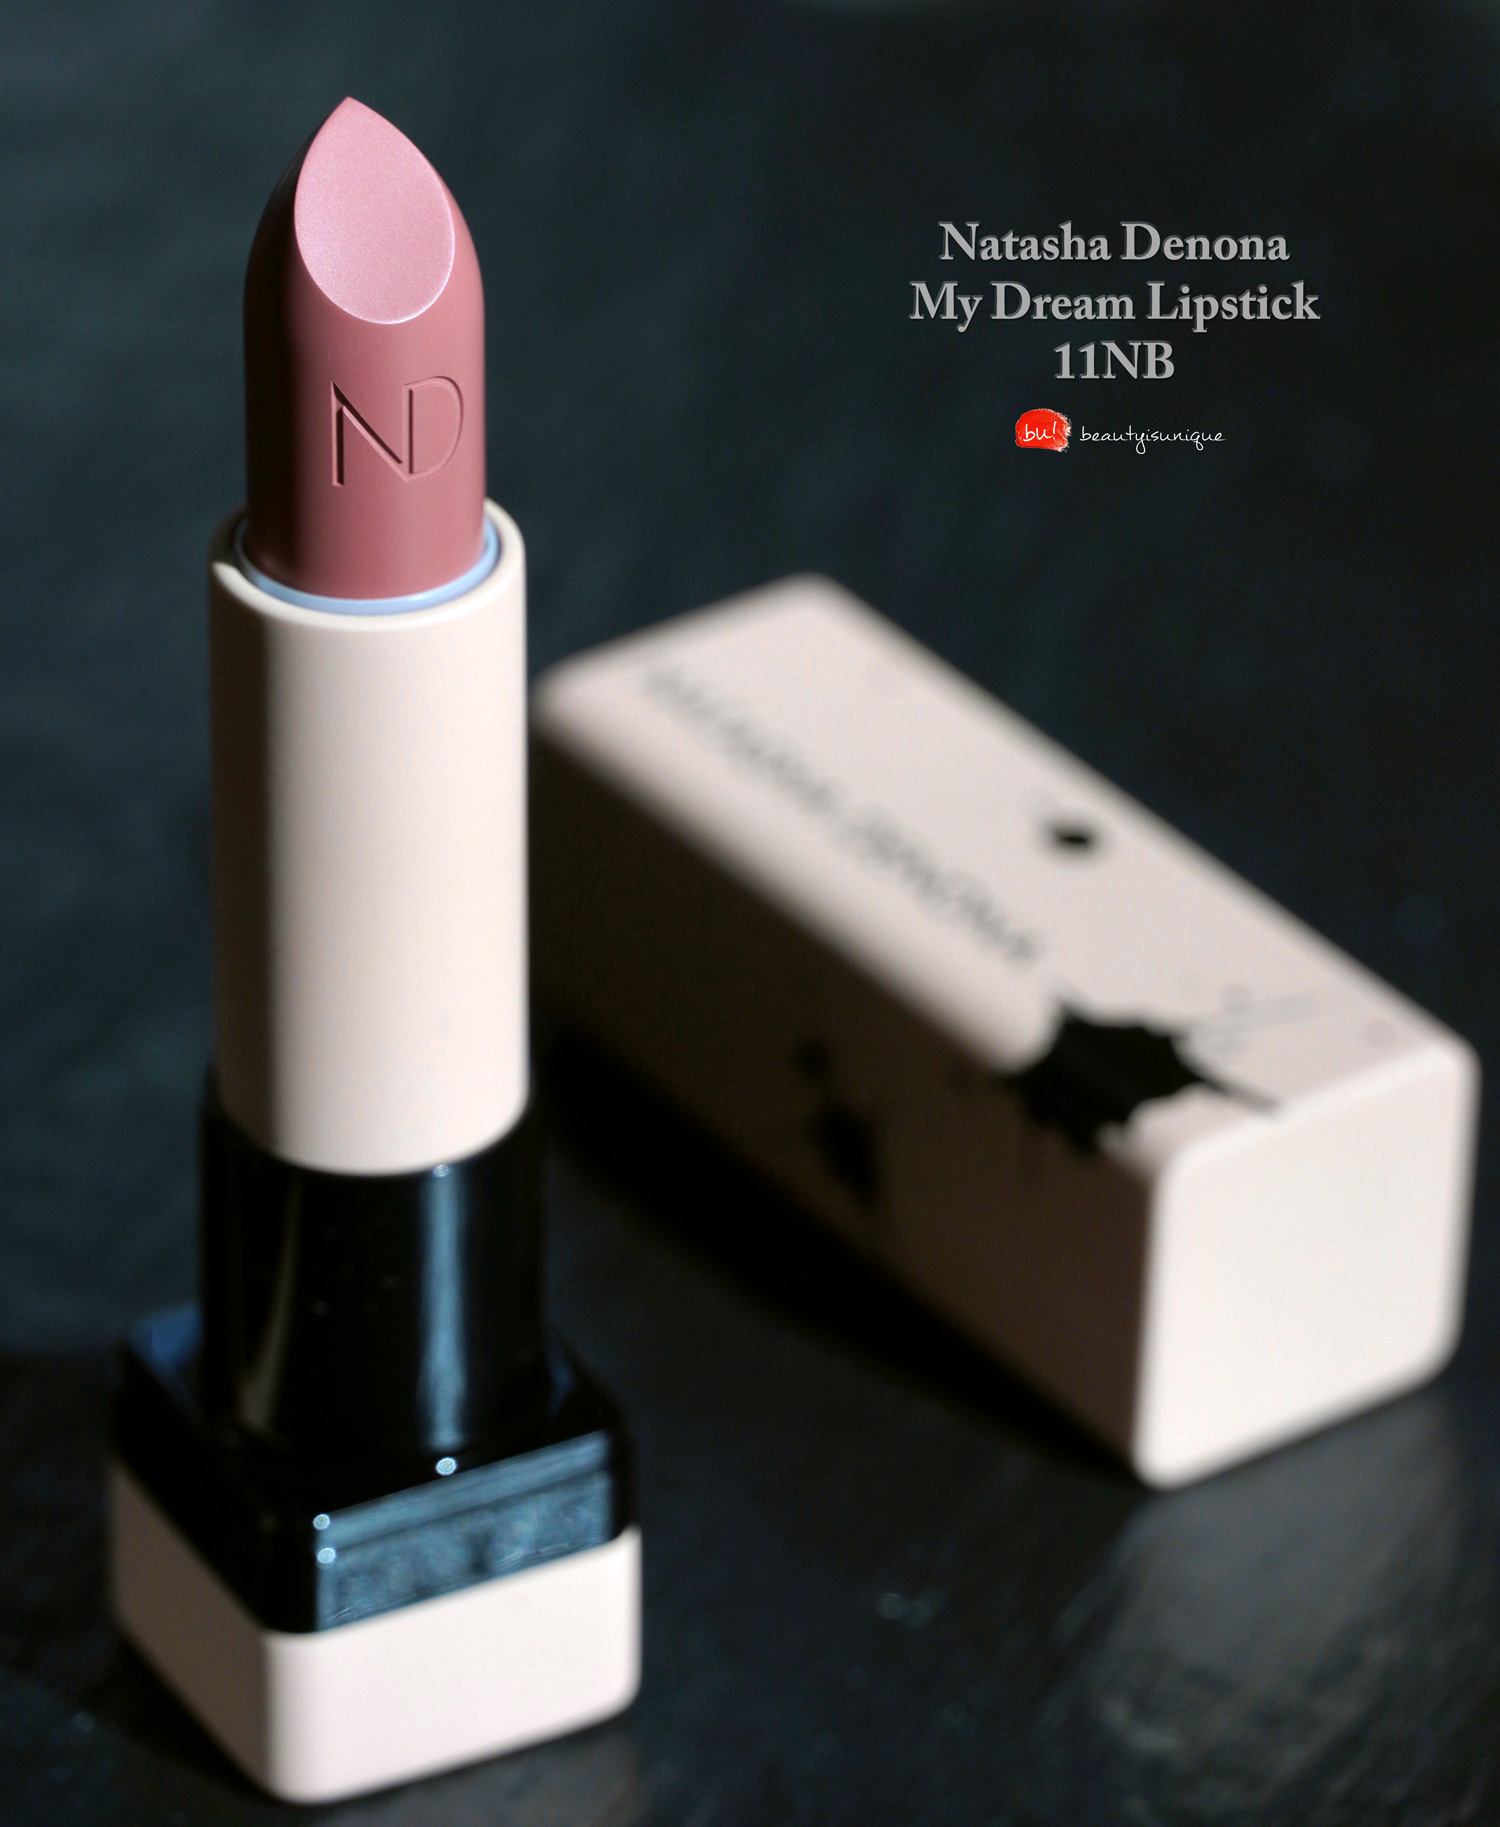 Natasha-denona-i-need-a-nude-lipstick-natasha